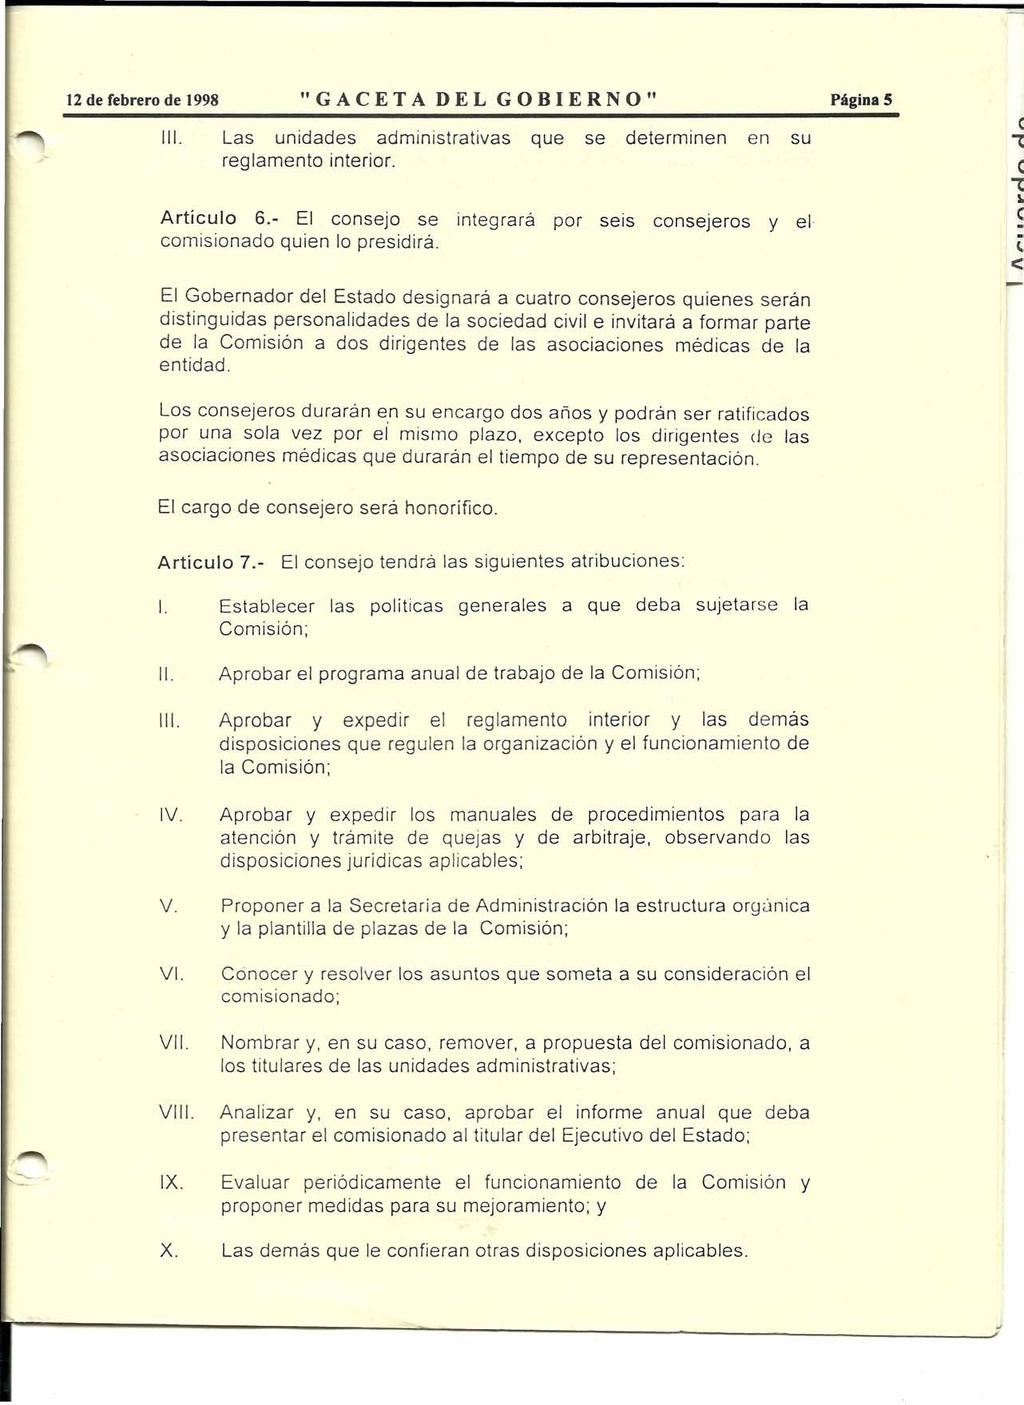 12 de febrero de 1998 "GACETA DEL GOBIERNO" Página 5 111. Las unidades administrativas que se determinen en su reglamento interior. Artículo 6.